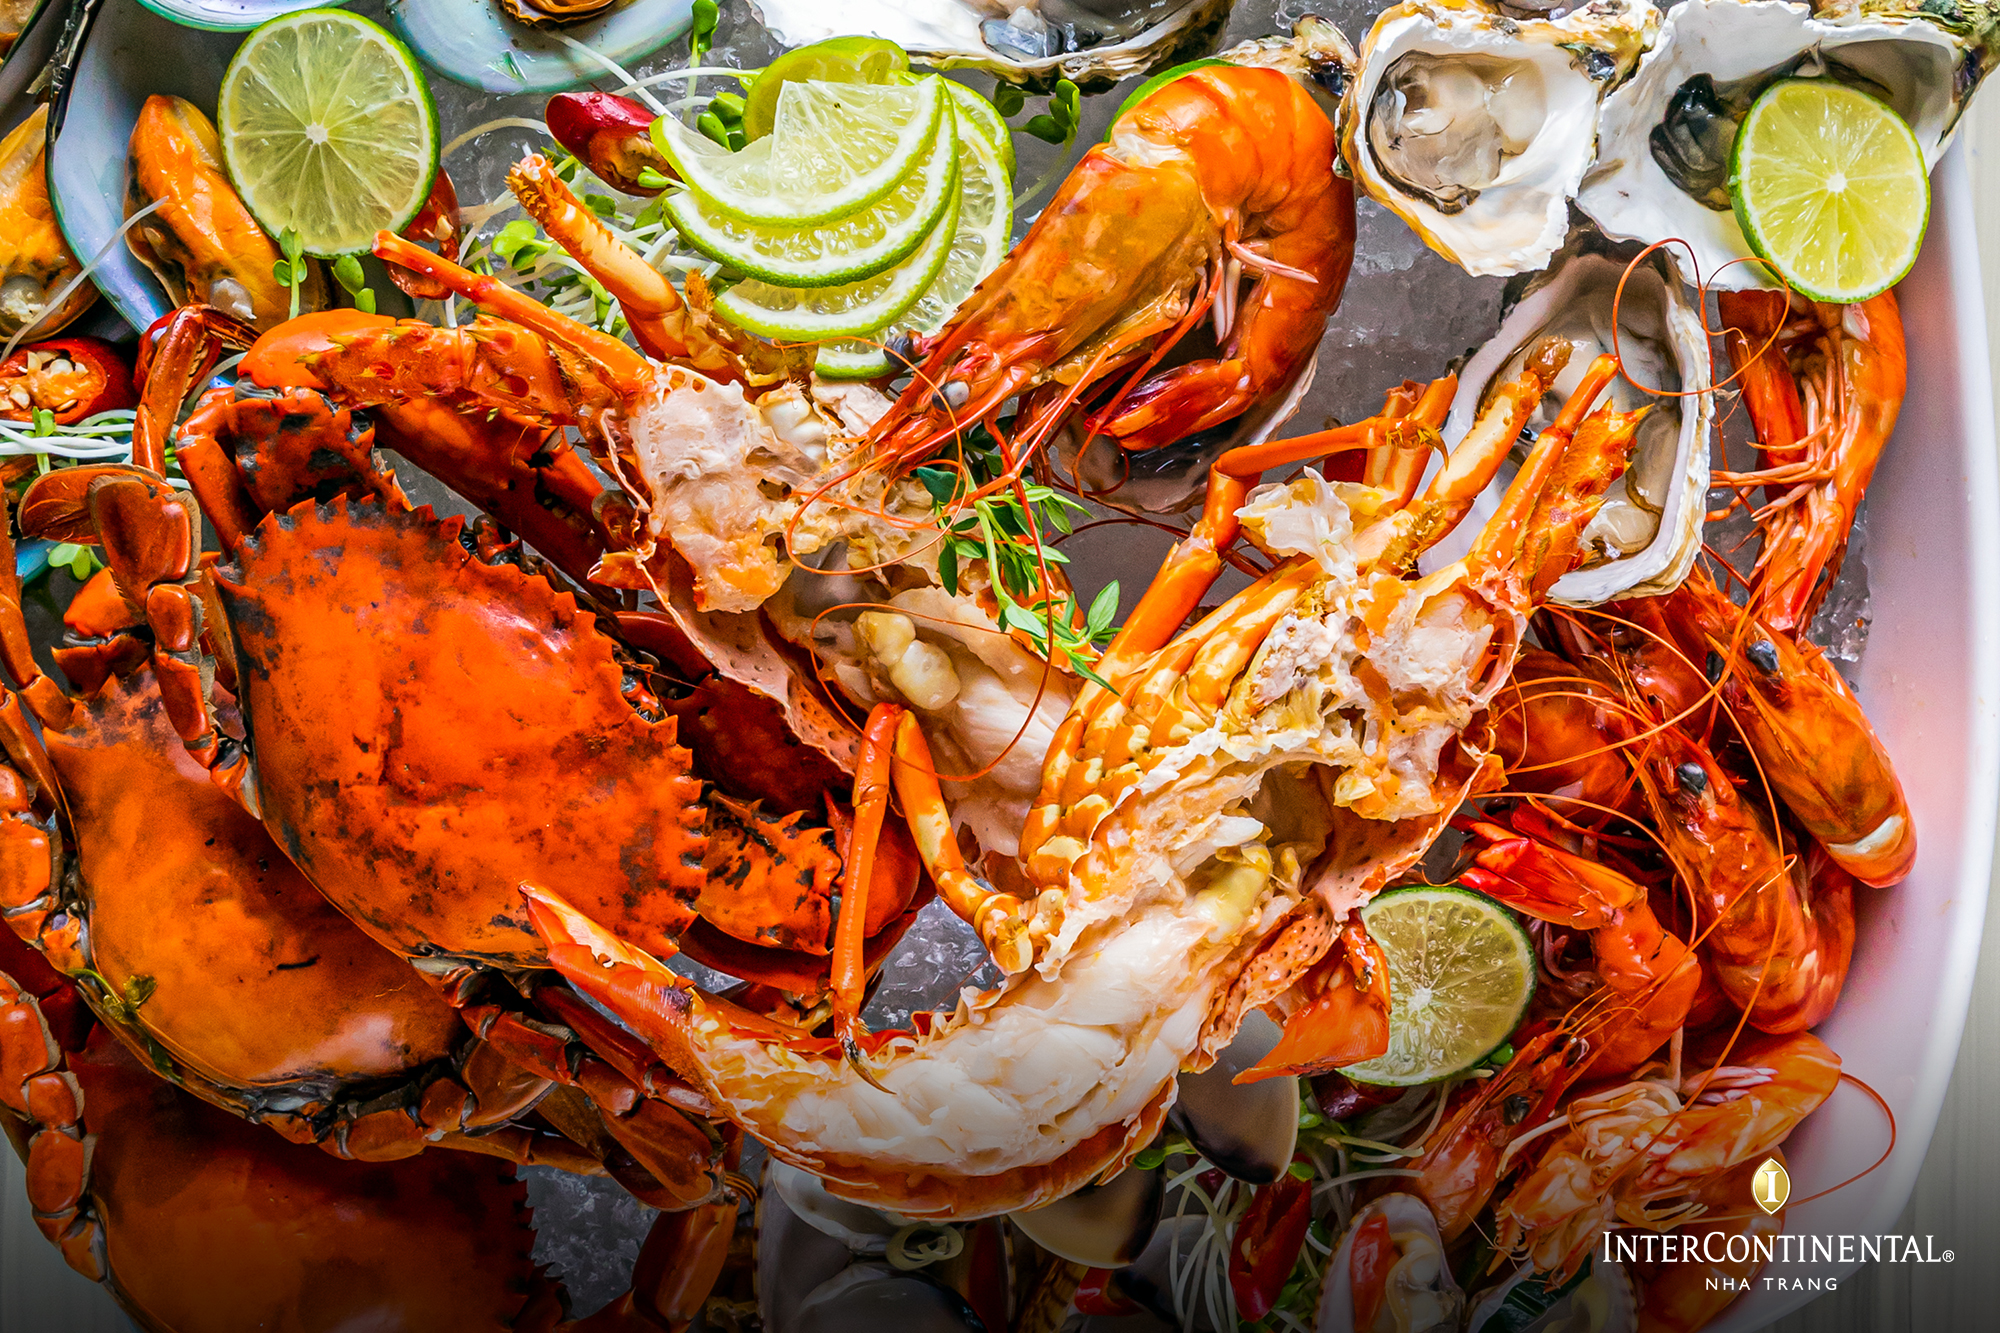 Quán hải sản làng chài Nha Trang có những món hải sản ngon nổi tiếng ra sao?
